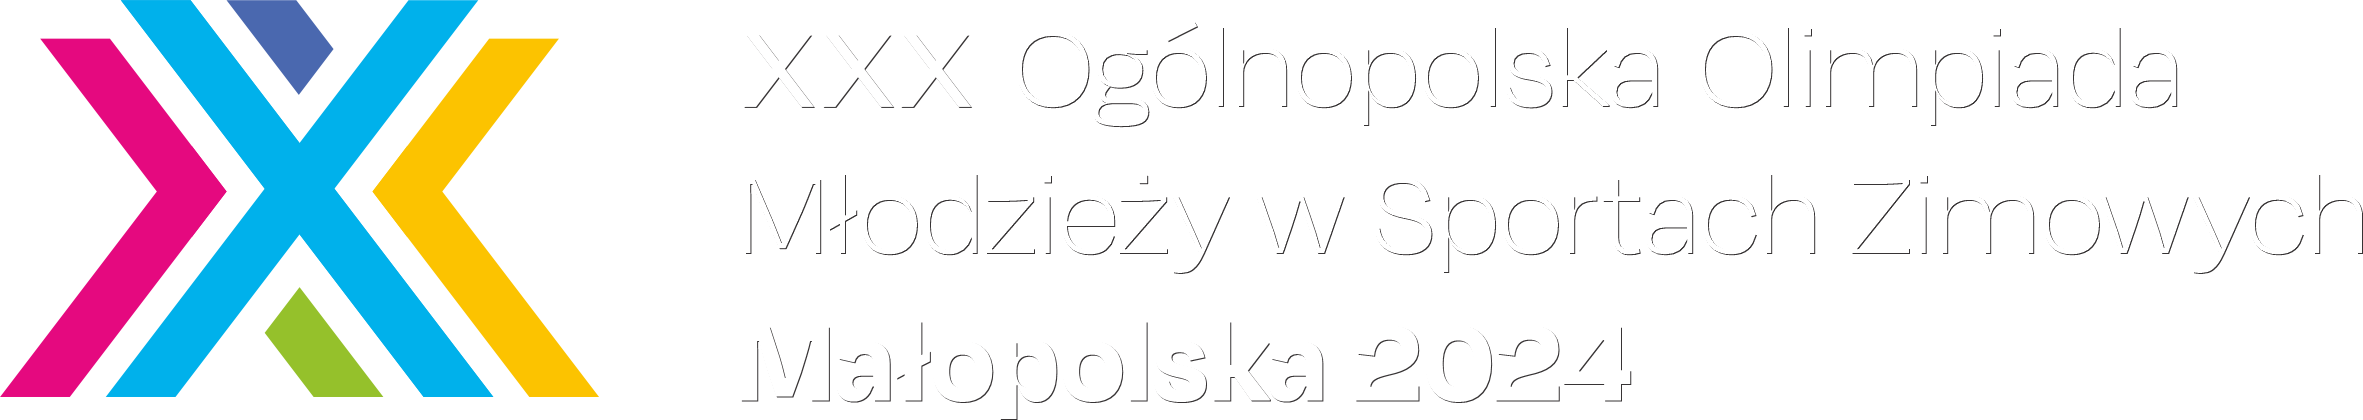 XXX Ogólnopolska Olimpiada Młodzieży w Sportach Zimowych Małopolska 2024